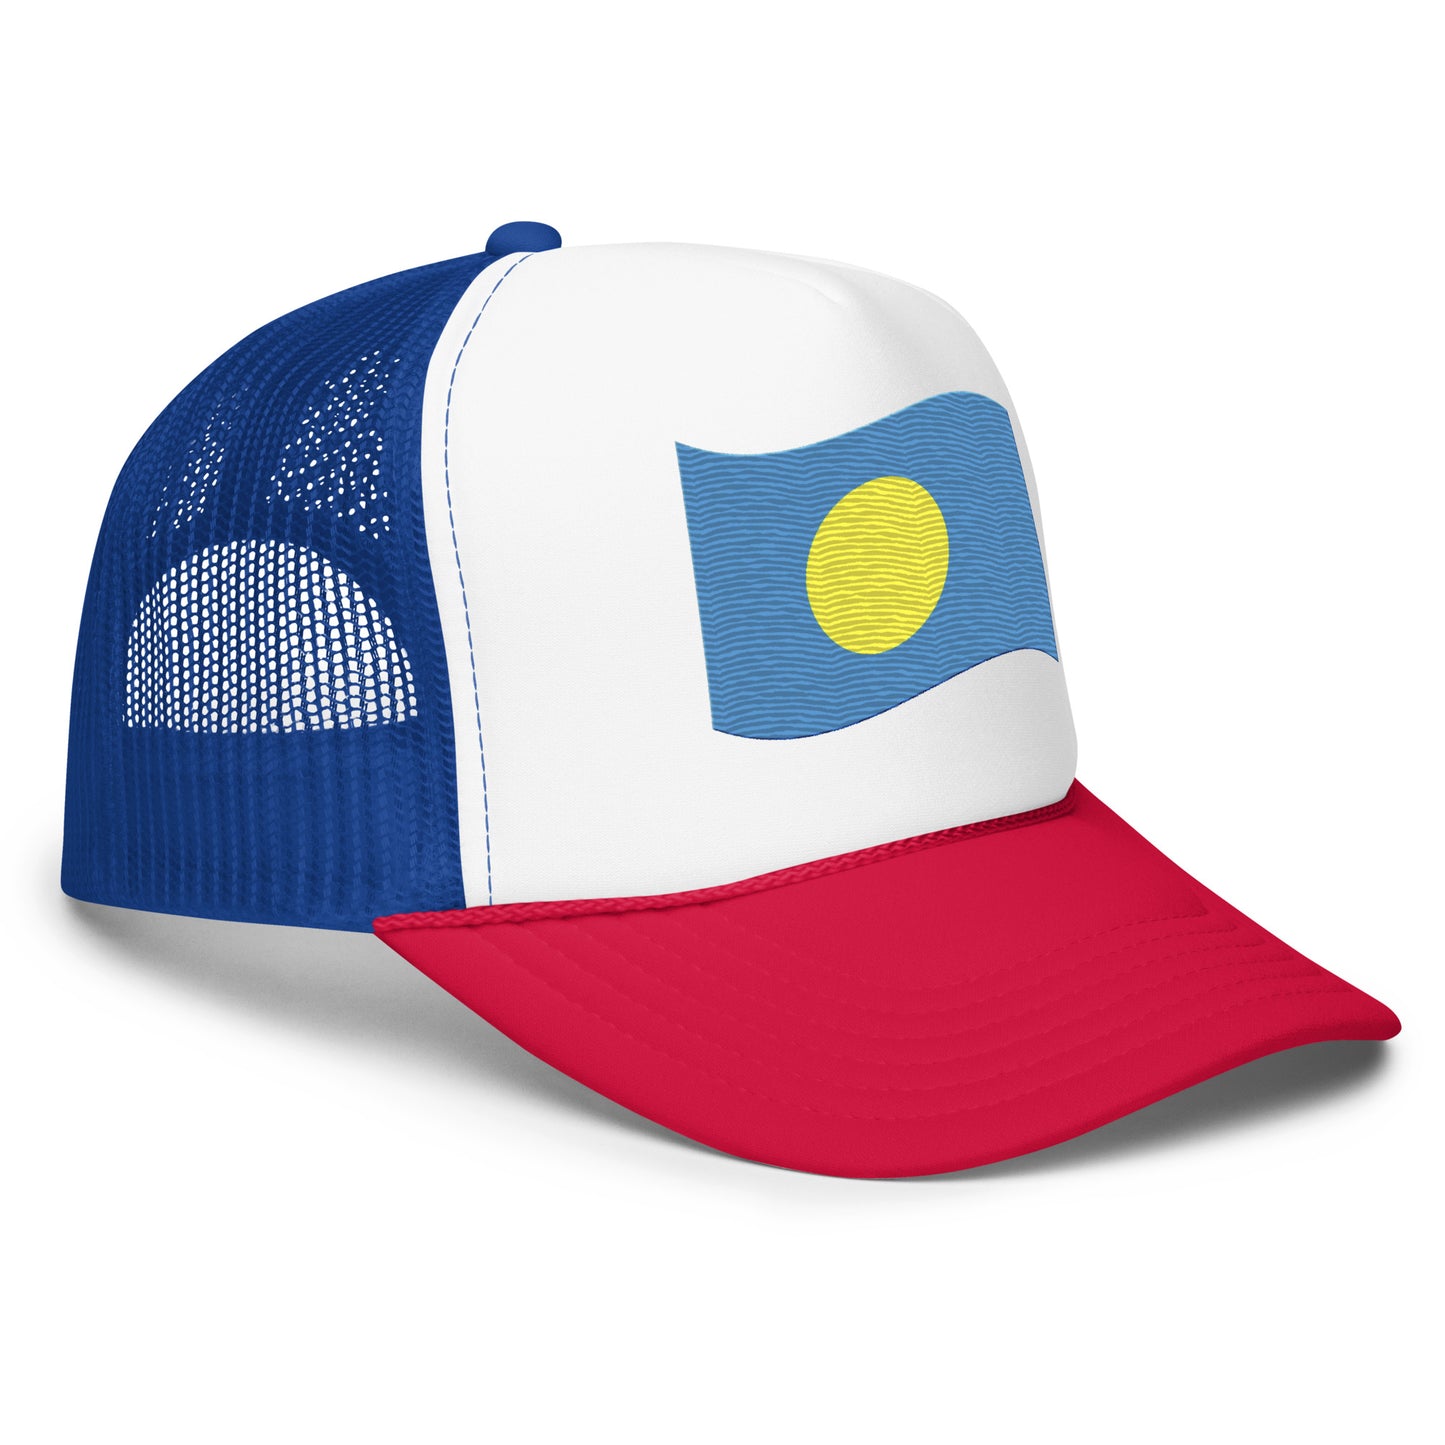 Foam trucker hat - Palau